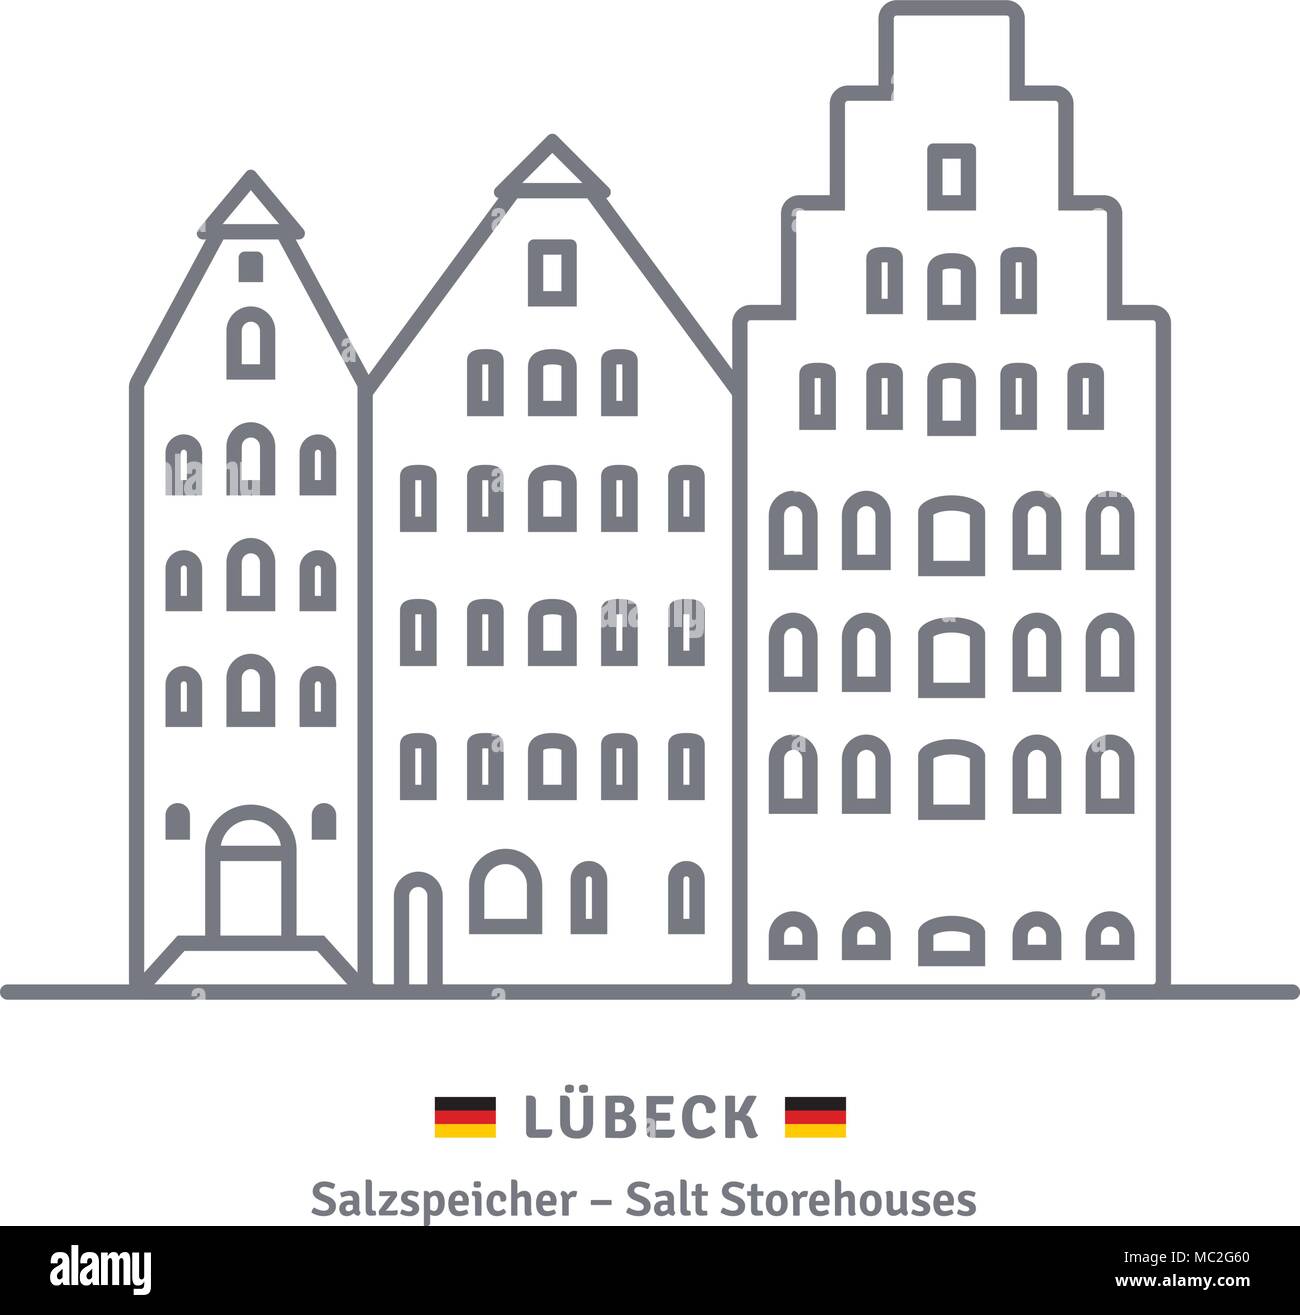 Icono de la línea histórica de almacenes de sal en Lübeck, Alemania con banderas alemanas Ilustración del Vector